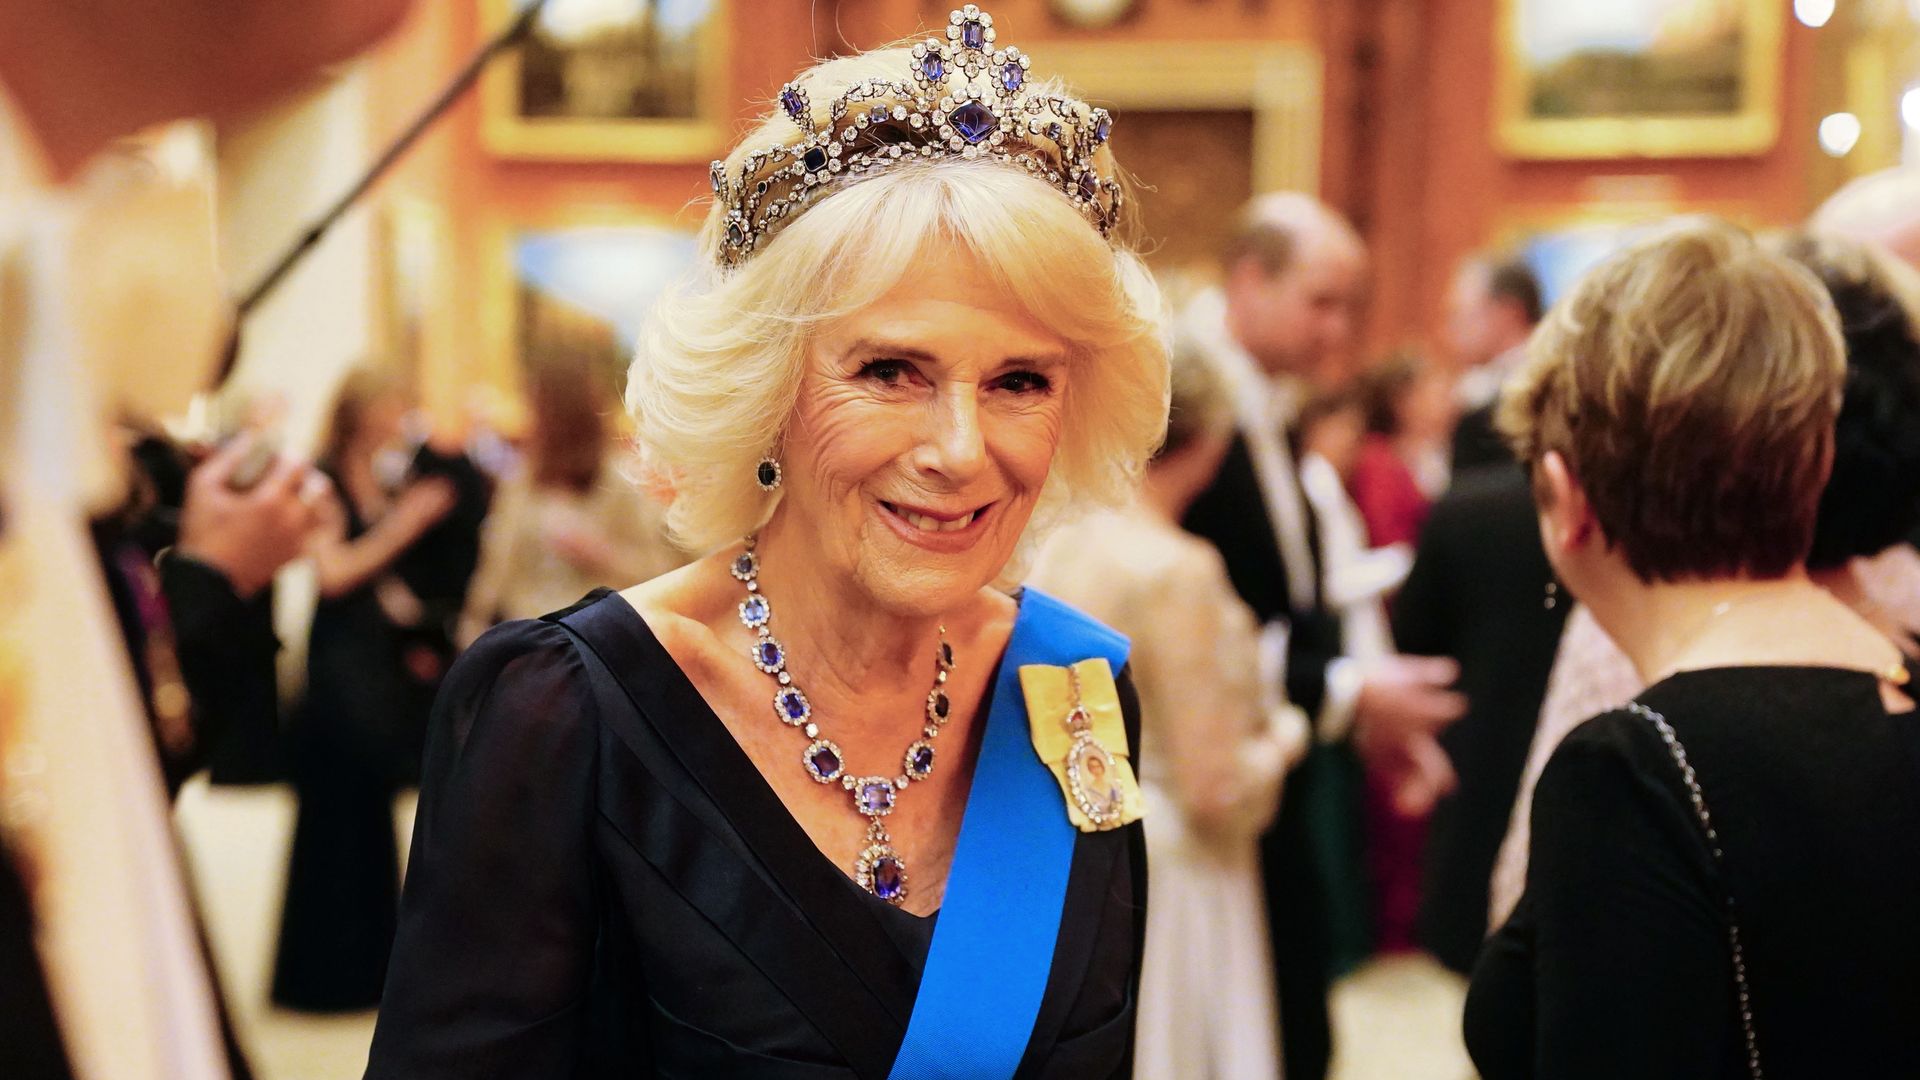 Camilla in blue dress and tiara and sash